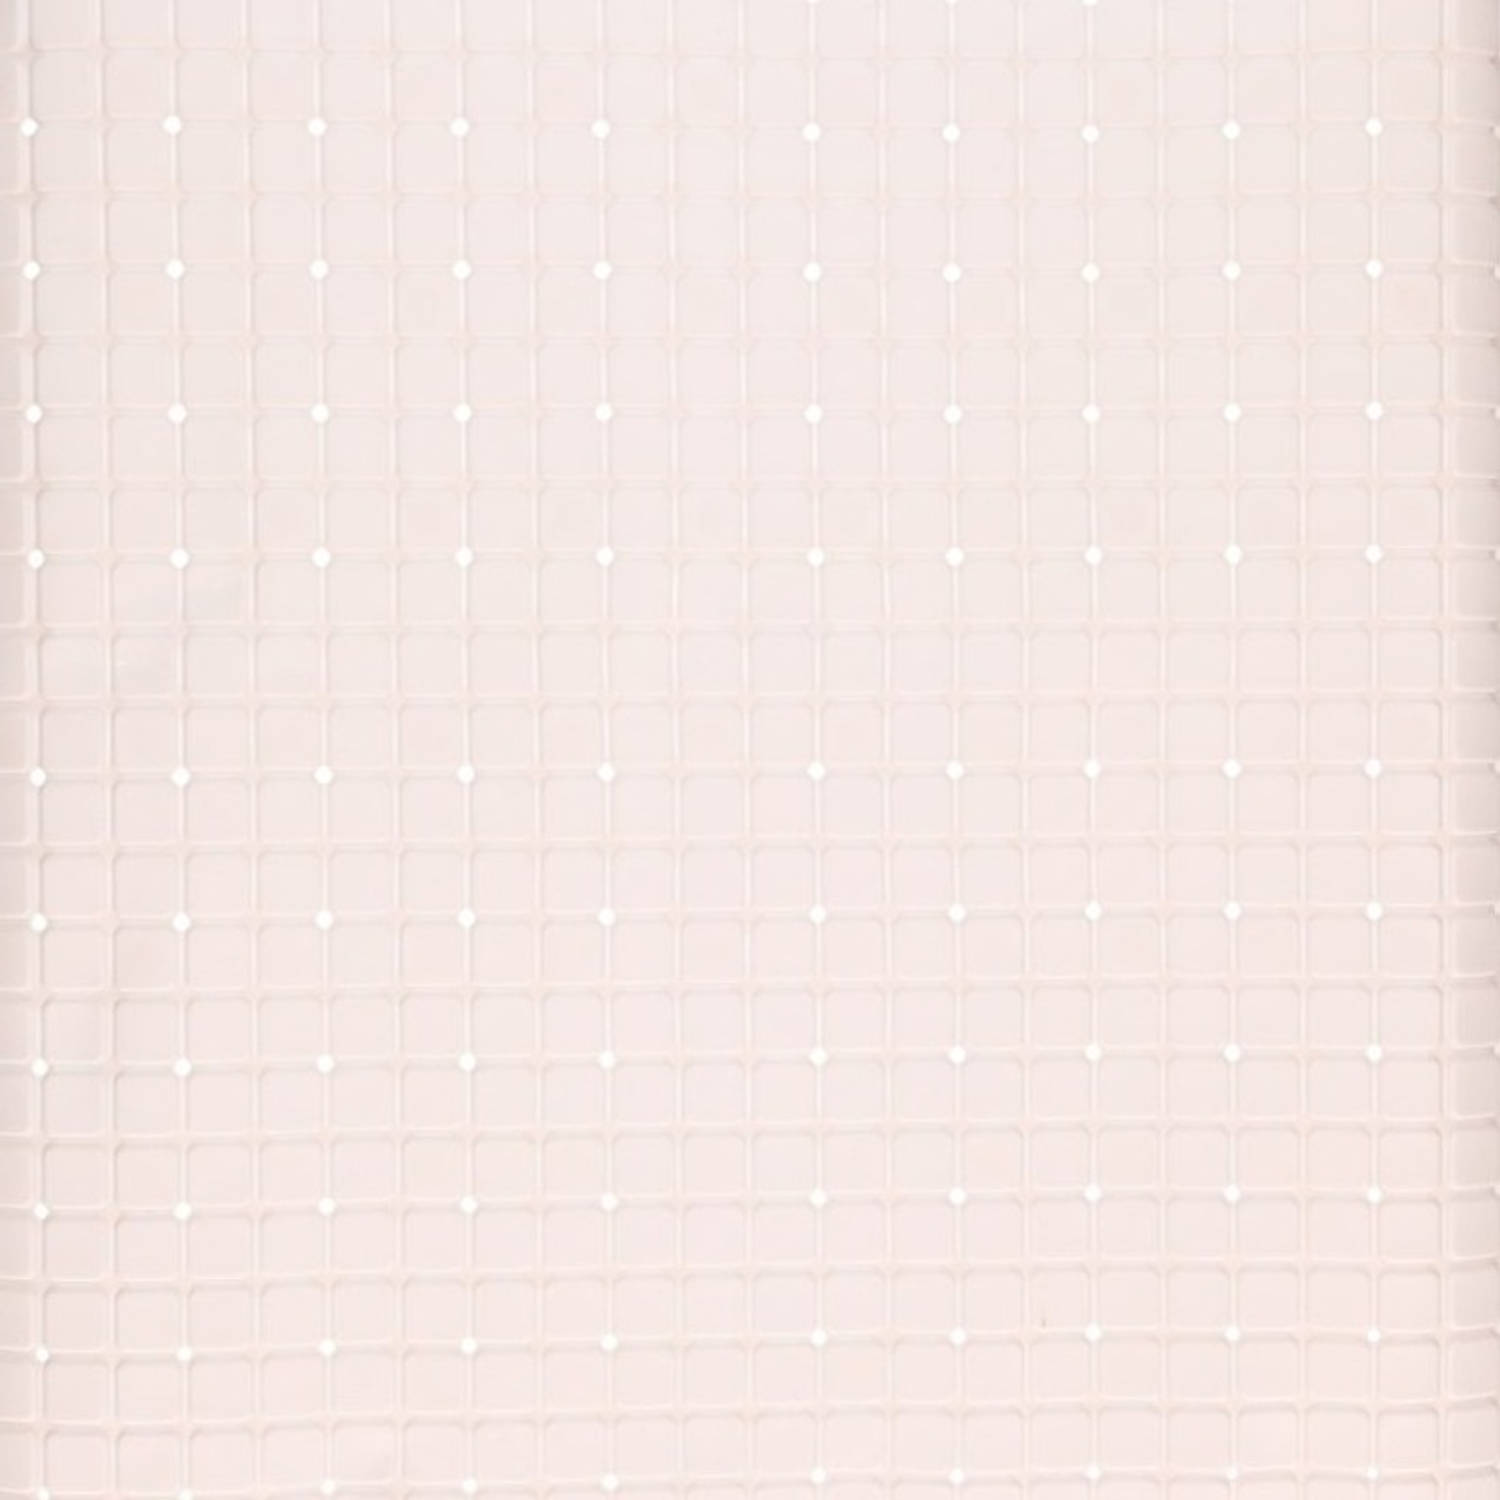 Witte antislip mat voor douchekabine 55 cm